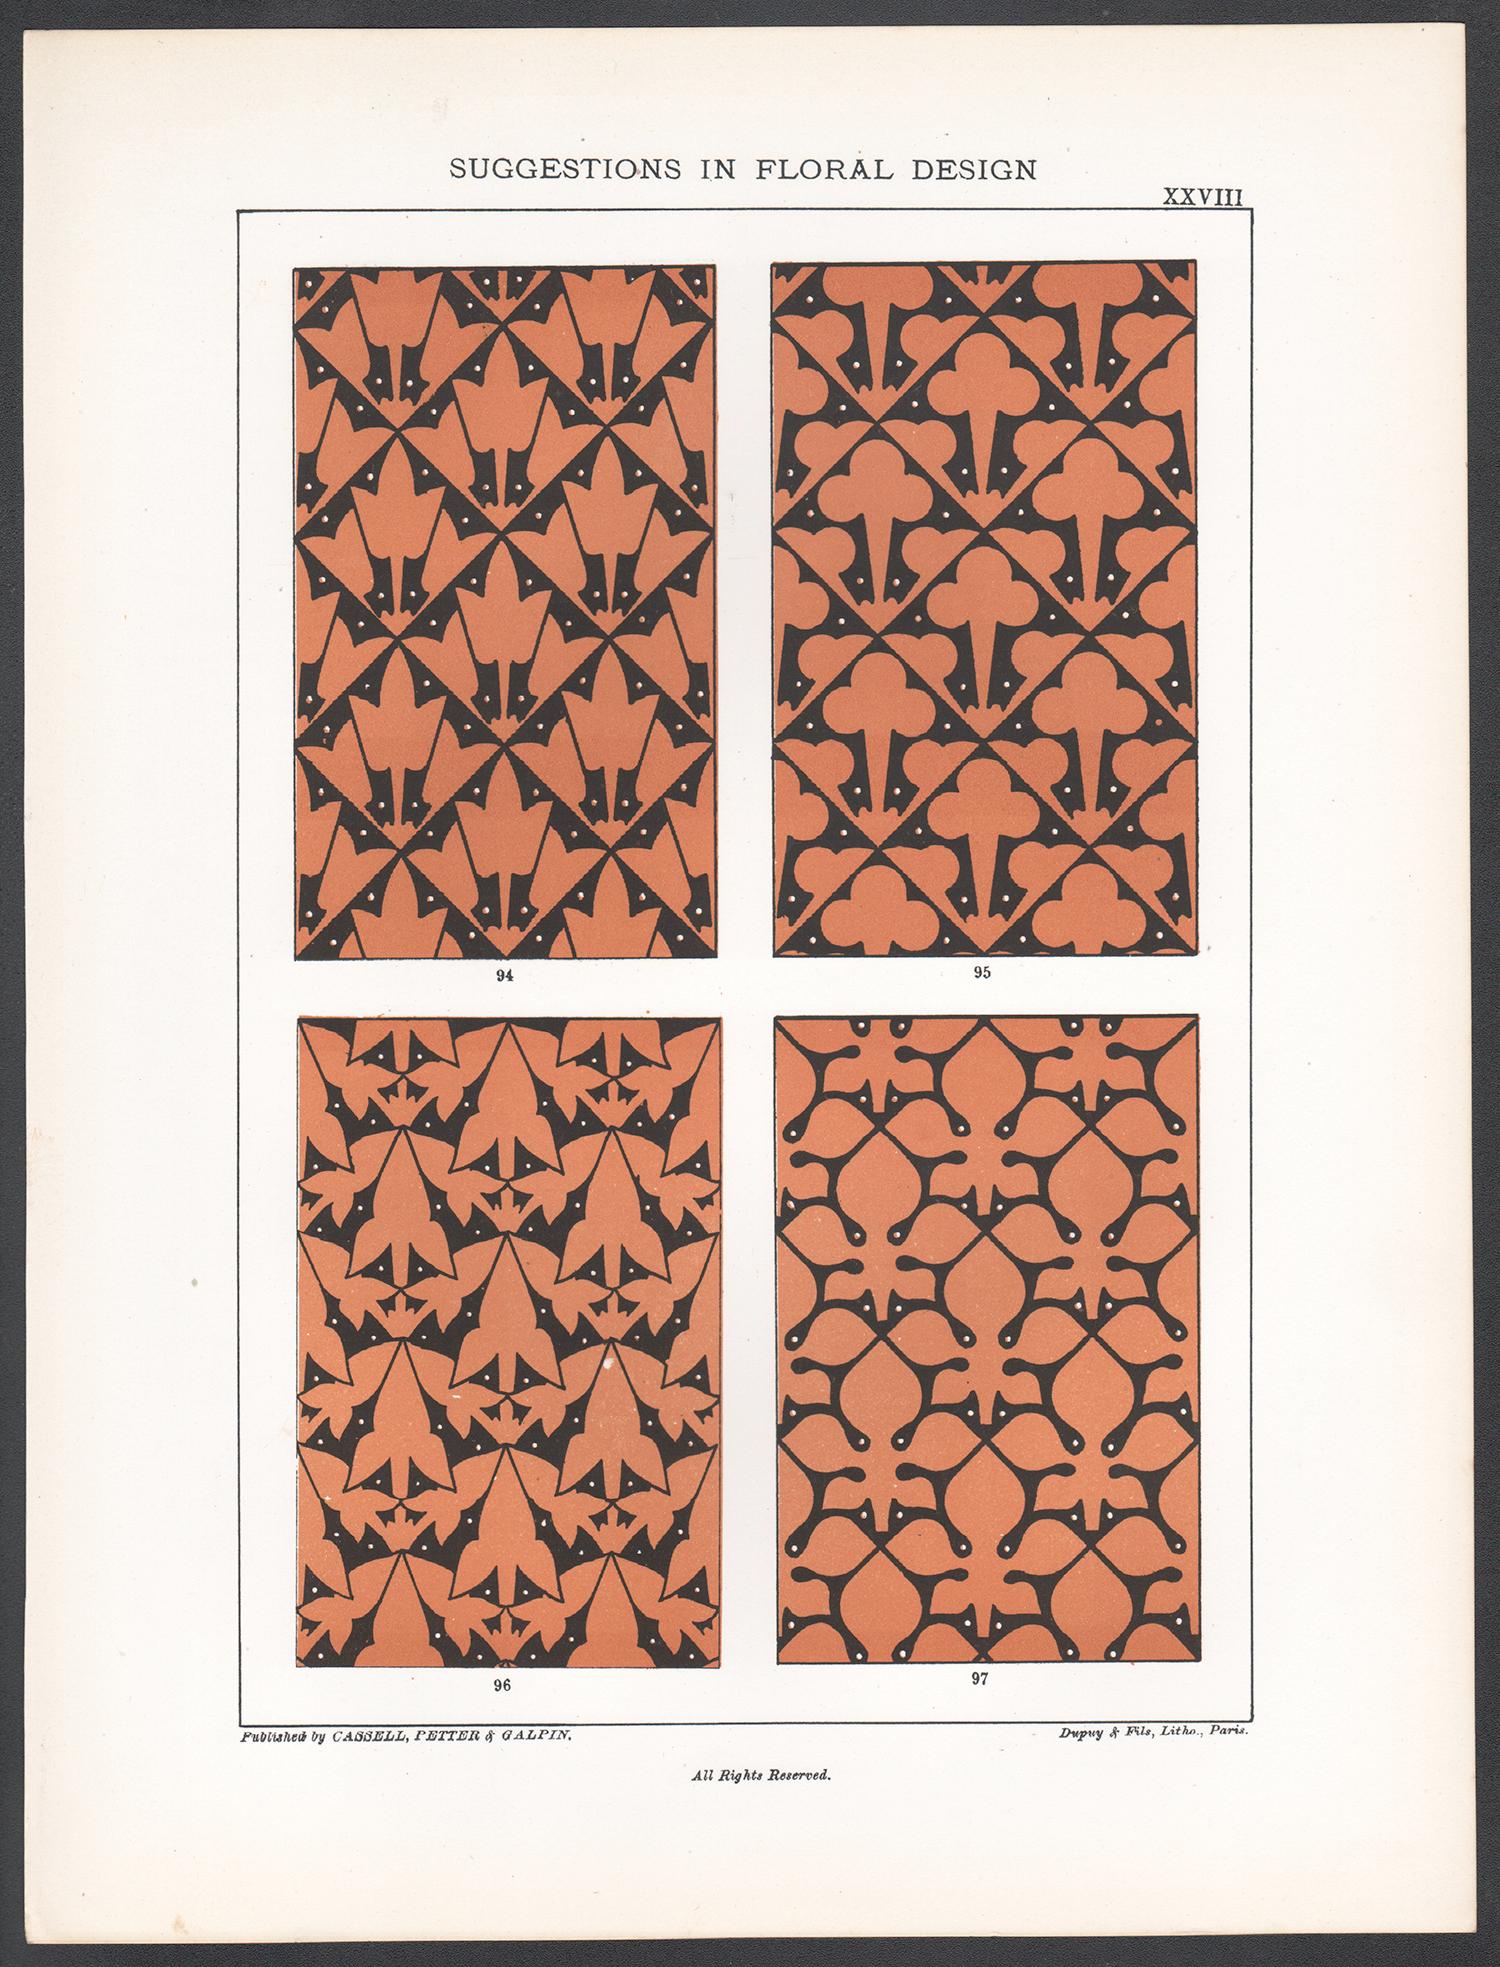 Suggestions en matière de design floral, Frederick Hulme, chromolithographie du XIXe siècle - Print de Frederick William Hulme